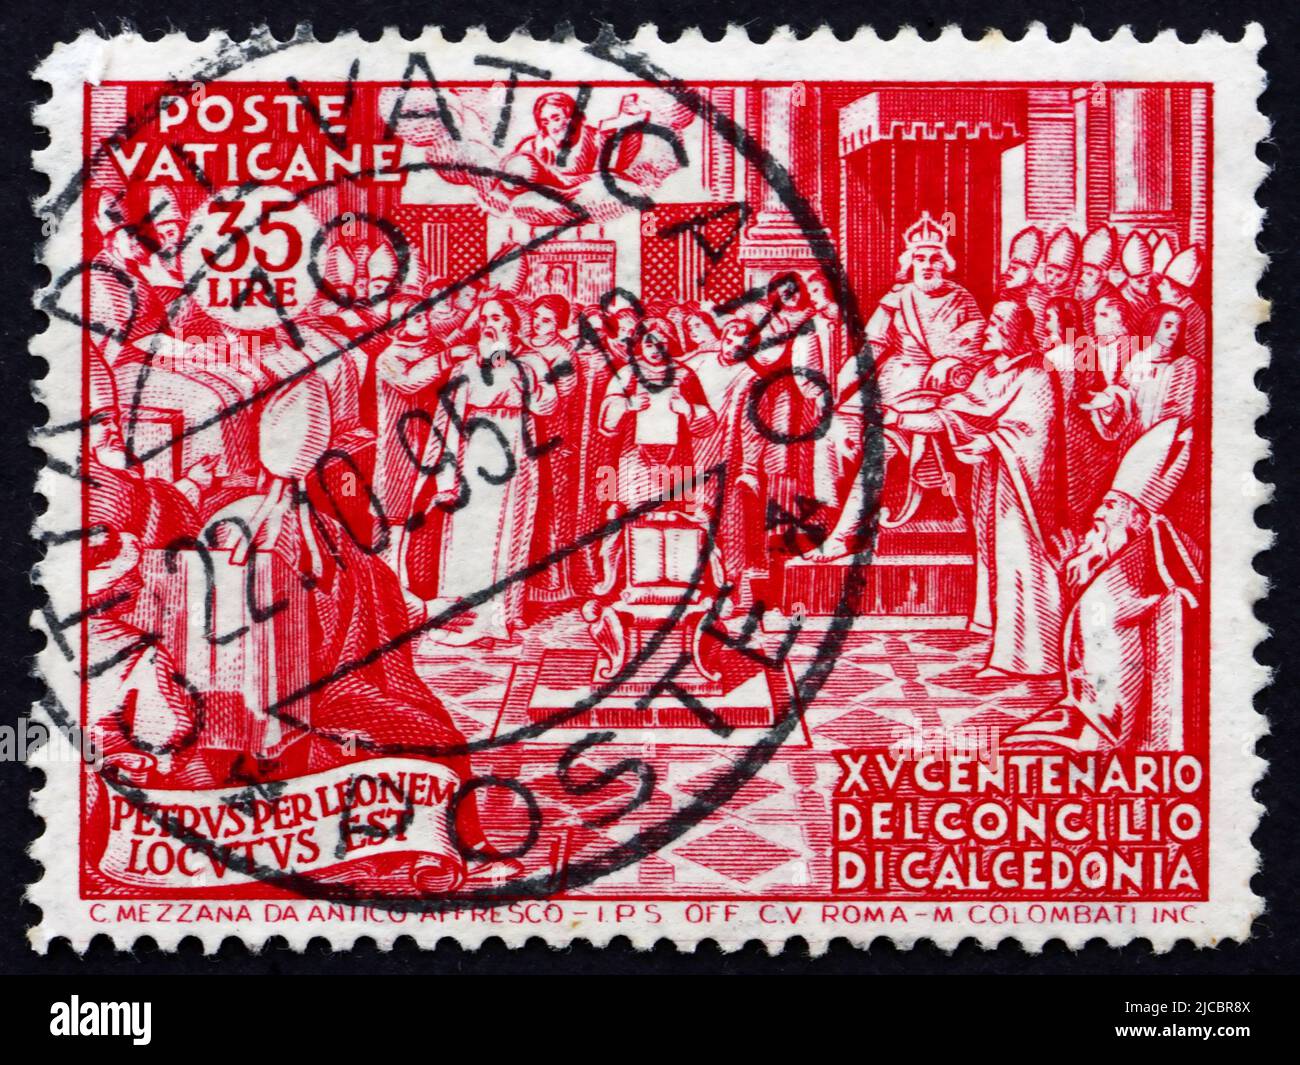 VATIKAN - UM 1951: Eine im Vatikan gedruckte Briefmarke zeigt das Konzil von Chalcedon, 1500.. Jahrestag, um 1951 Stockfoto